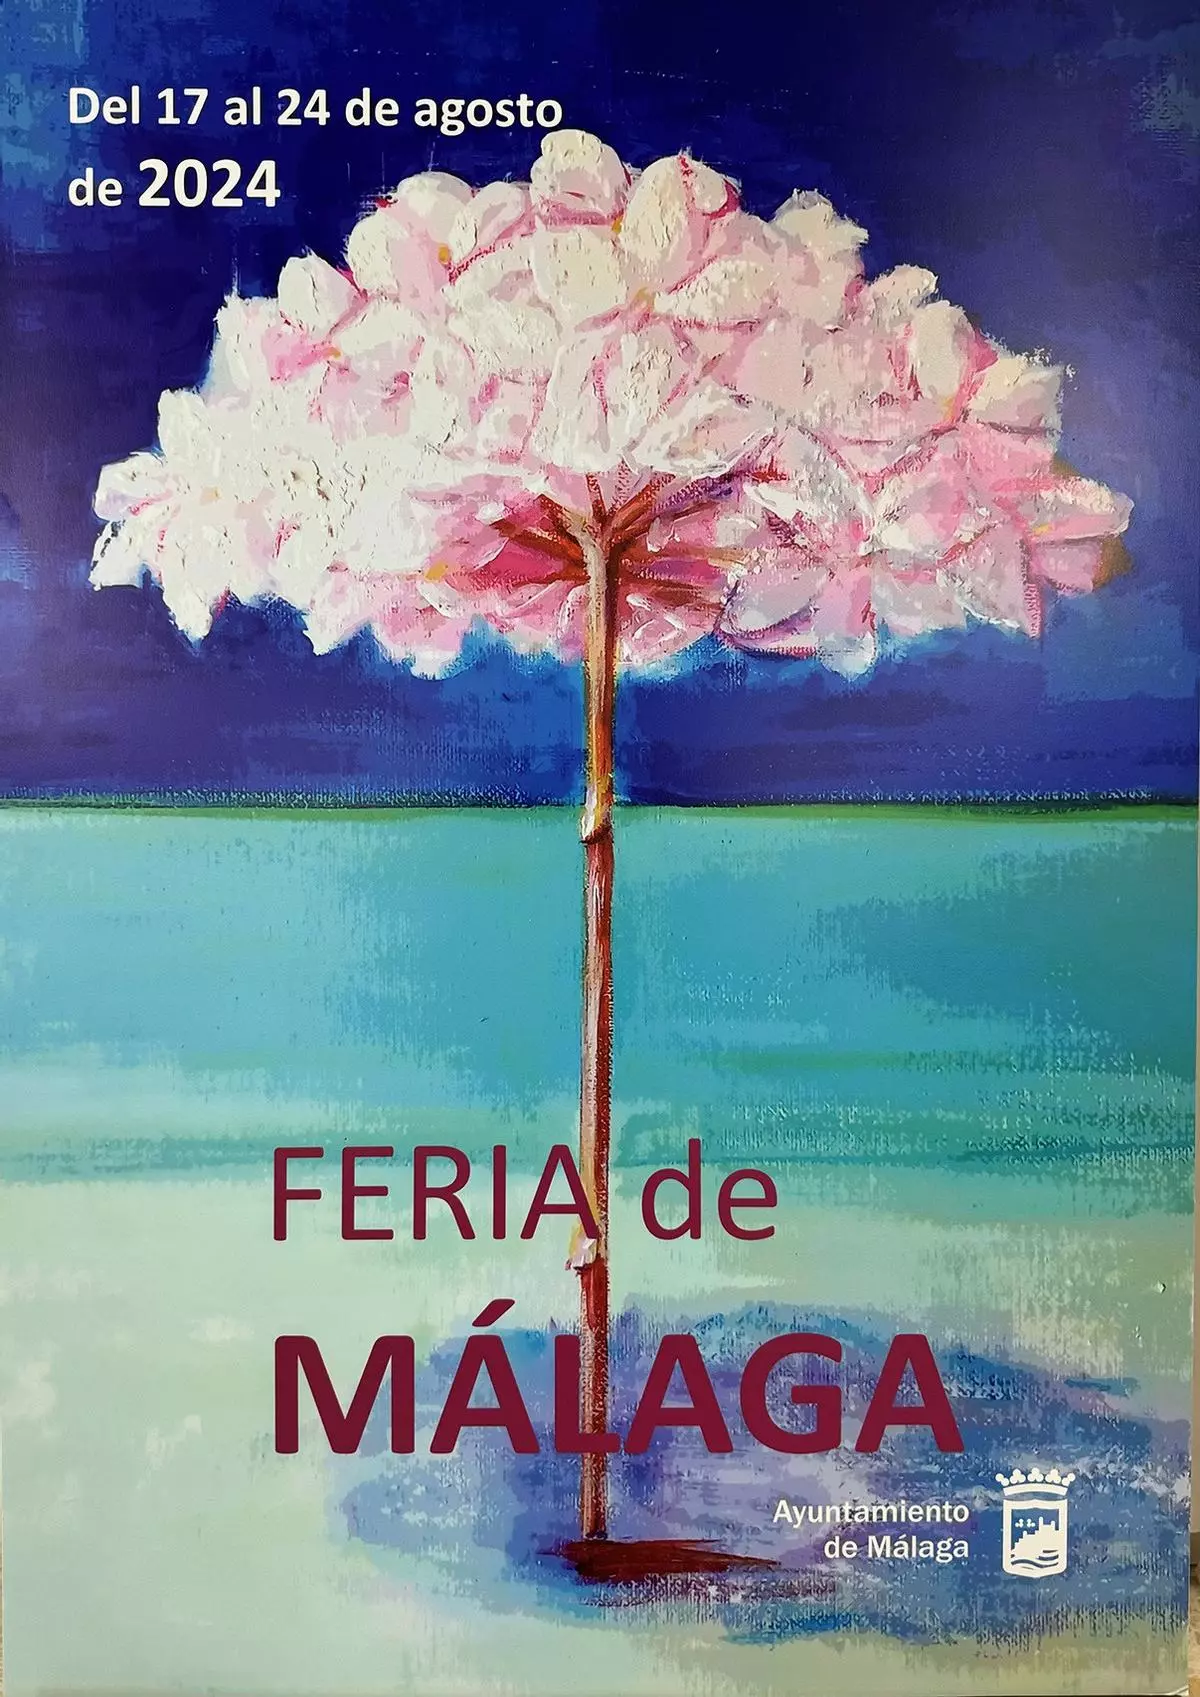 'Mi playa en Feria' de Eloisa Peñas, elegido como cartel de la Feria de Málaga